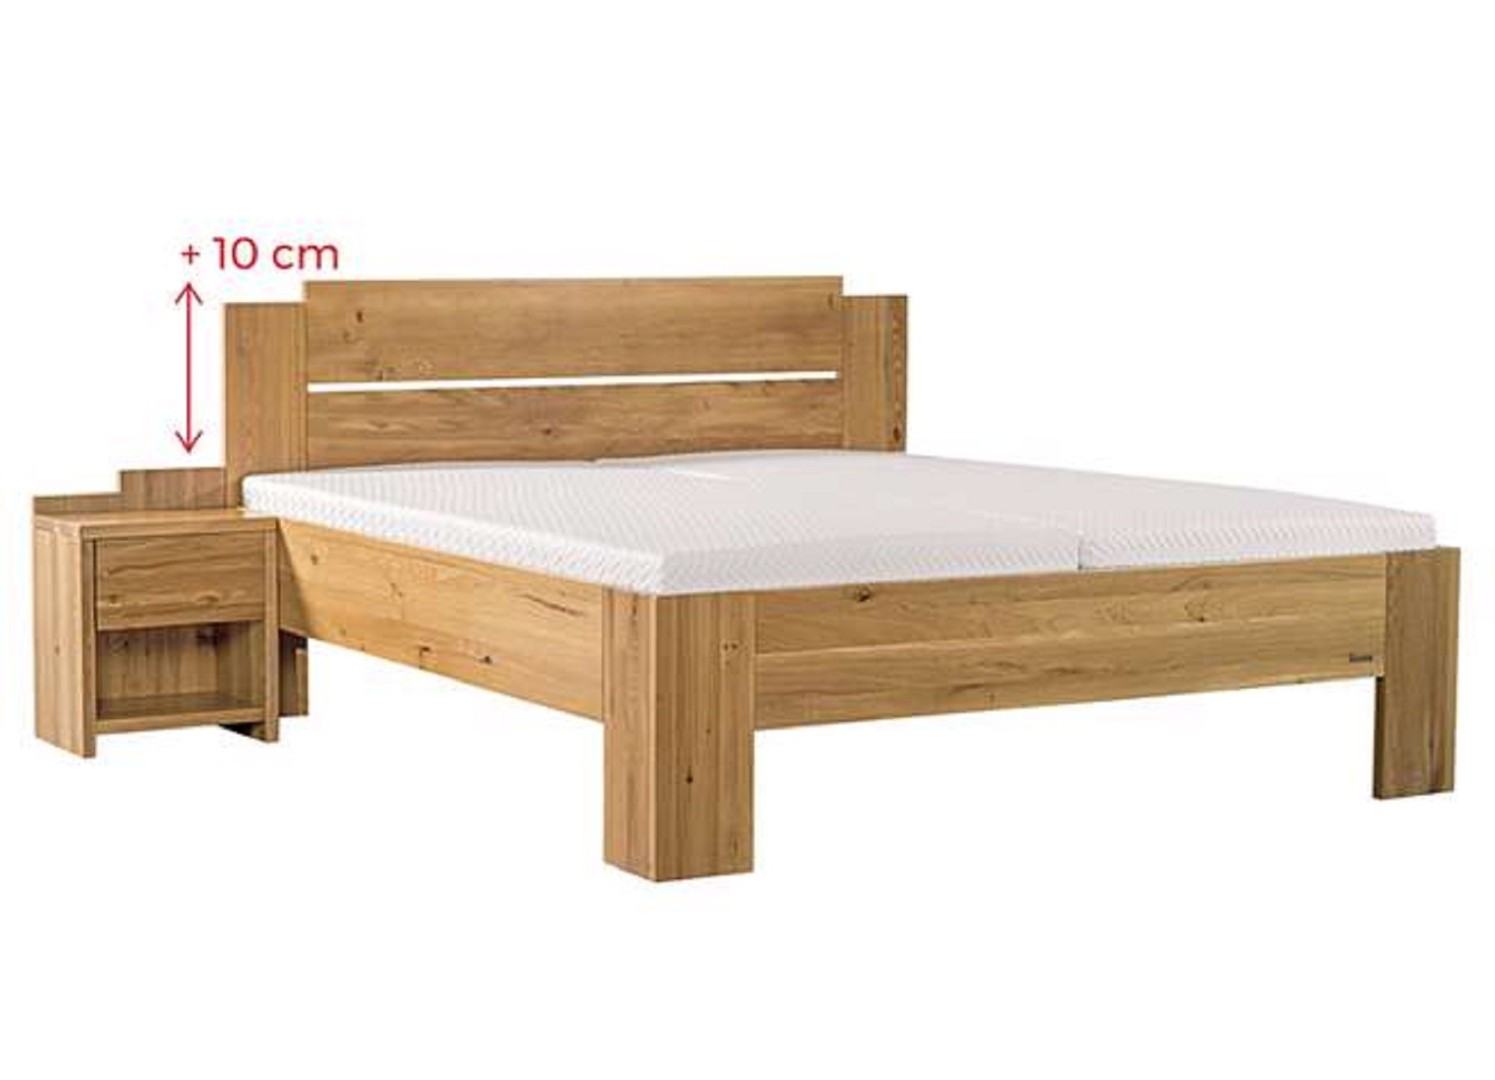 Ahorn GRADO MAX - masivní dubová postel se zvýšeným čelem, dub masiv